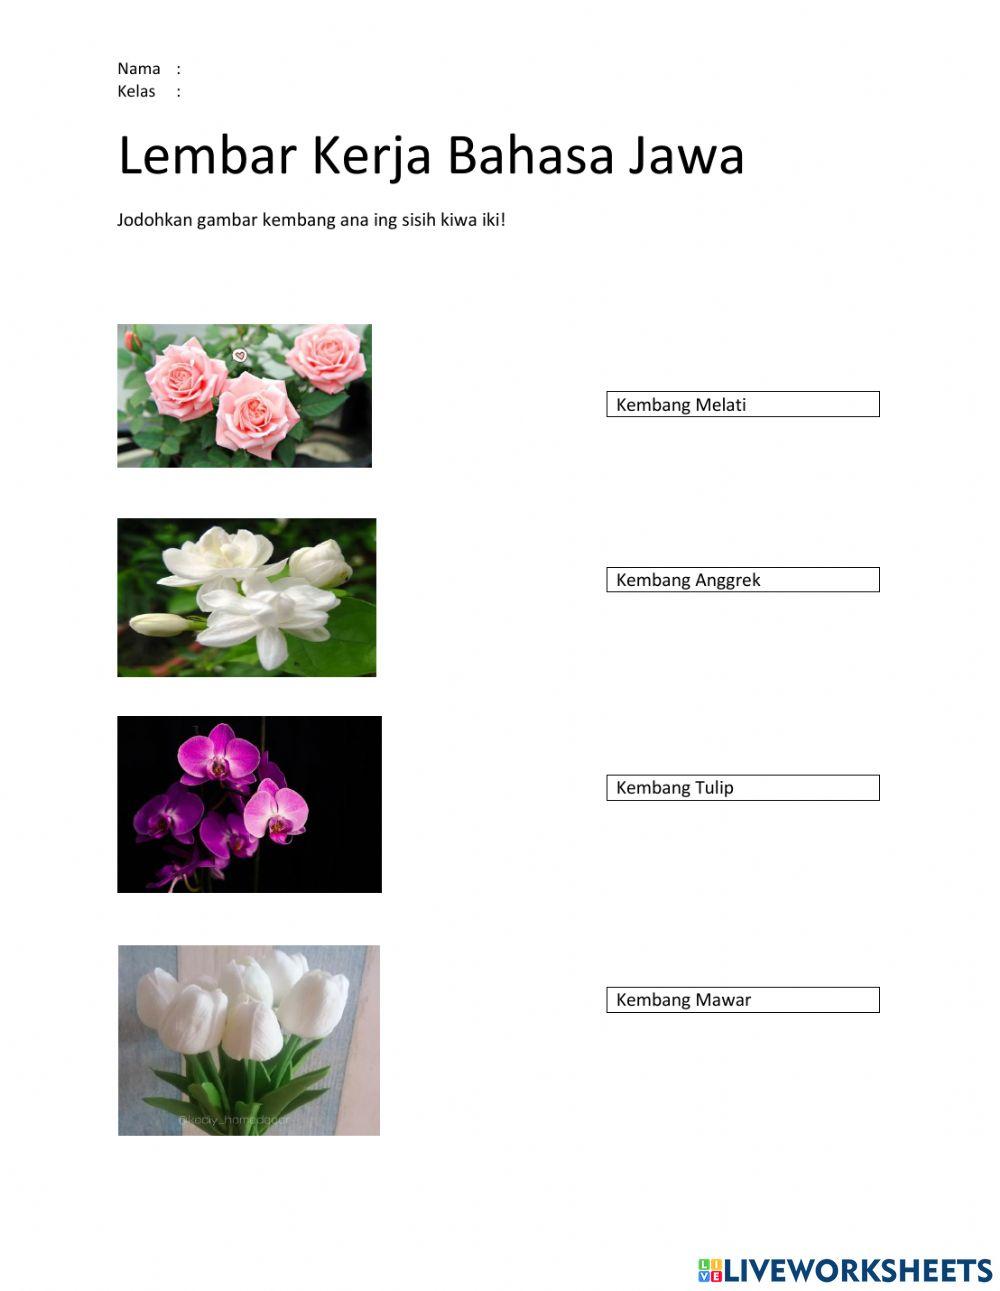 Lembar Kerja Bahasa Jawa